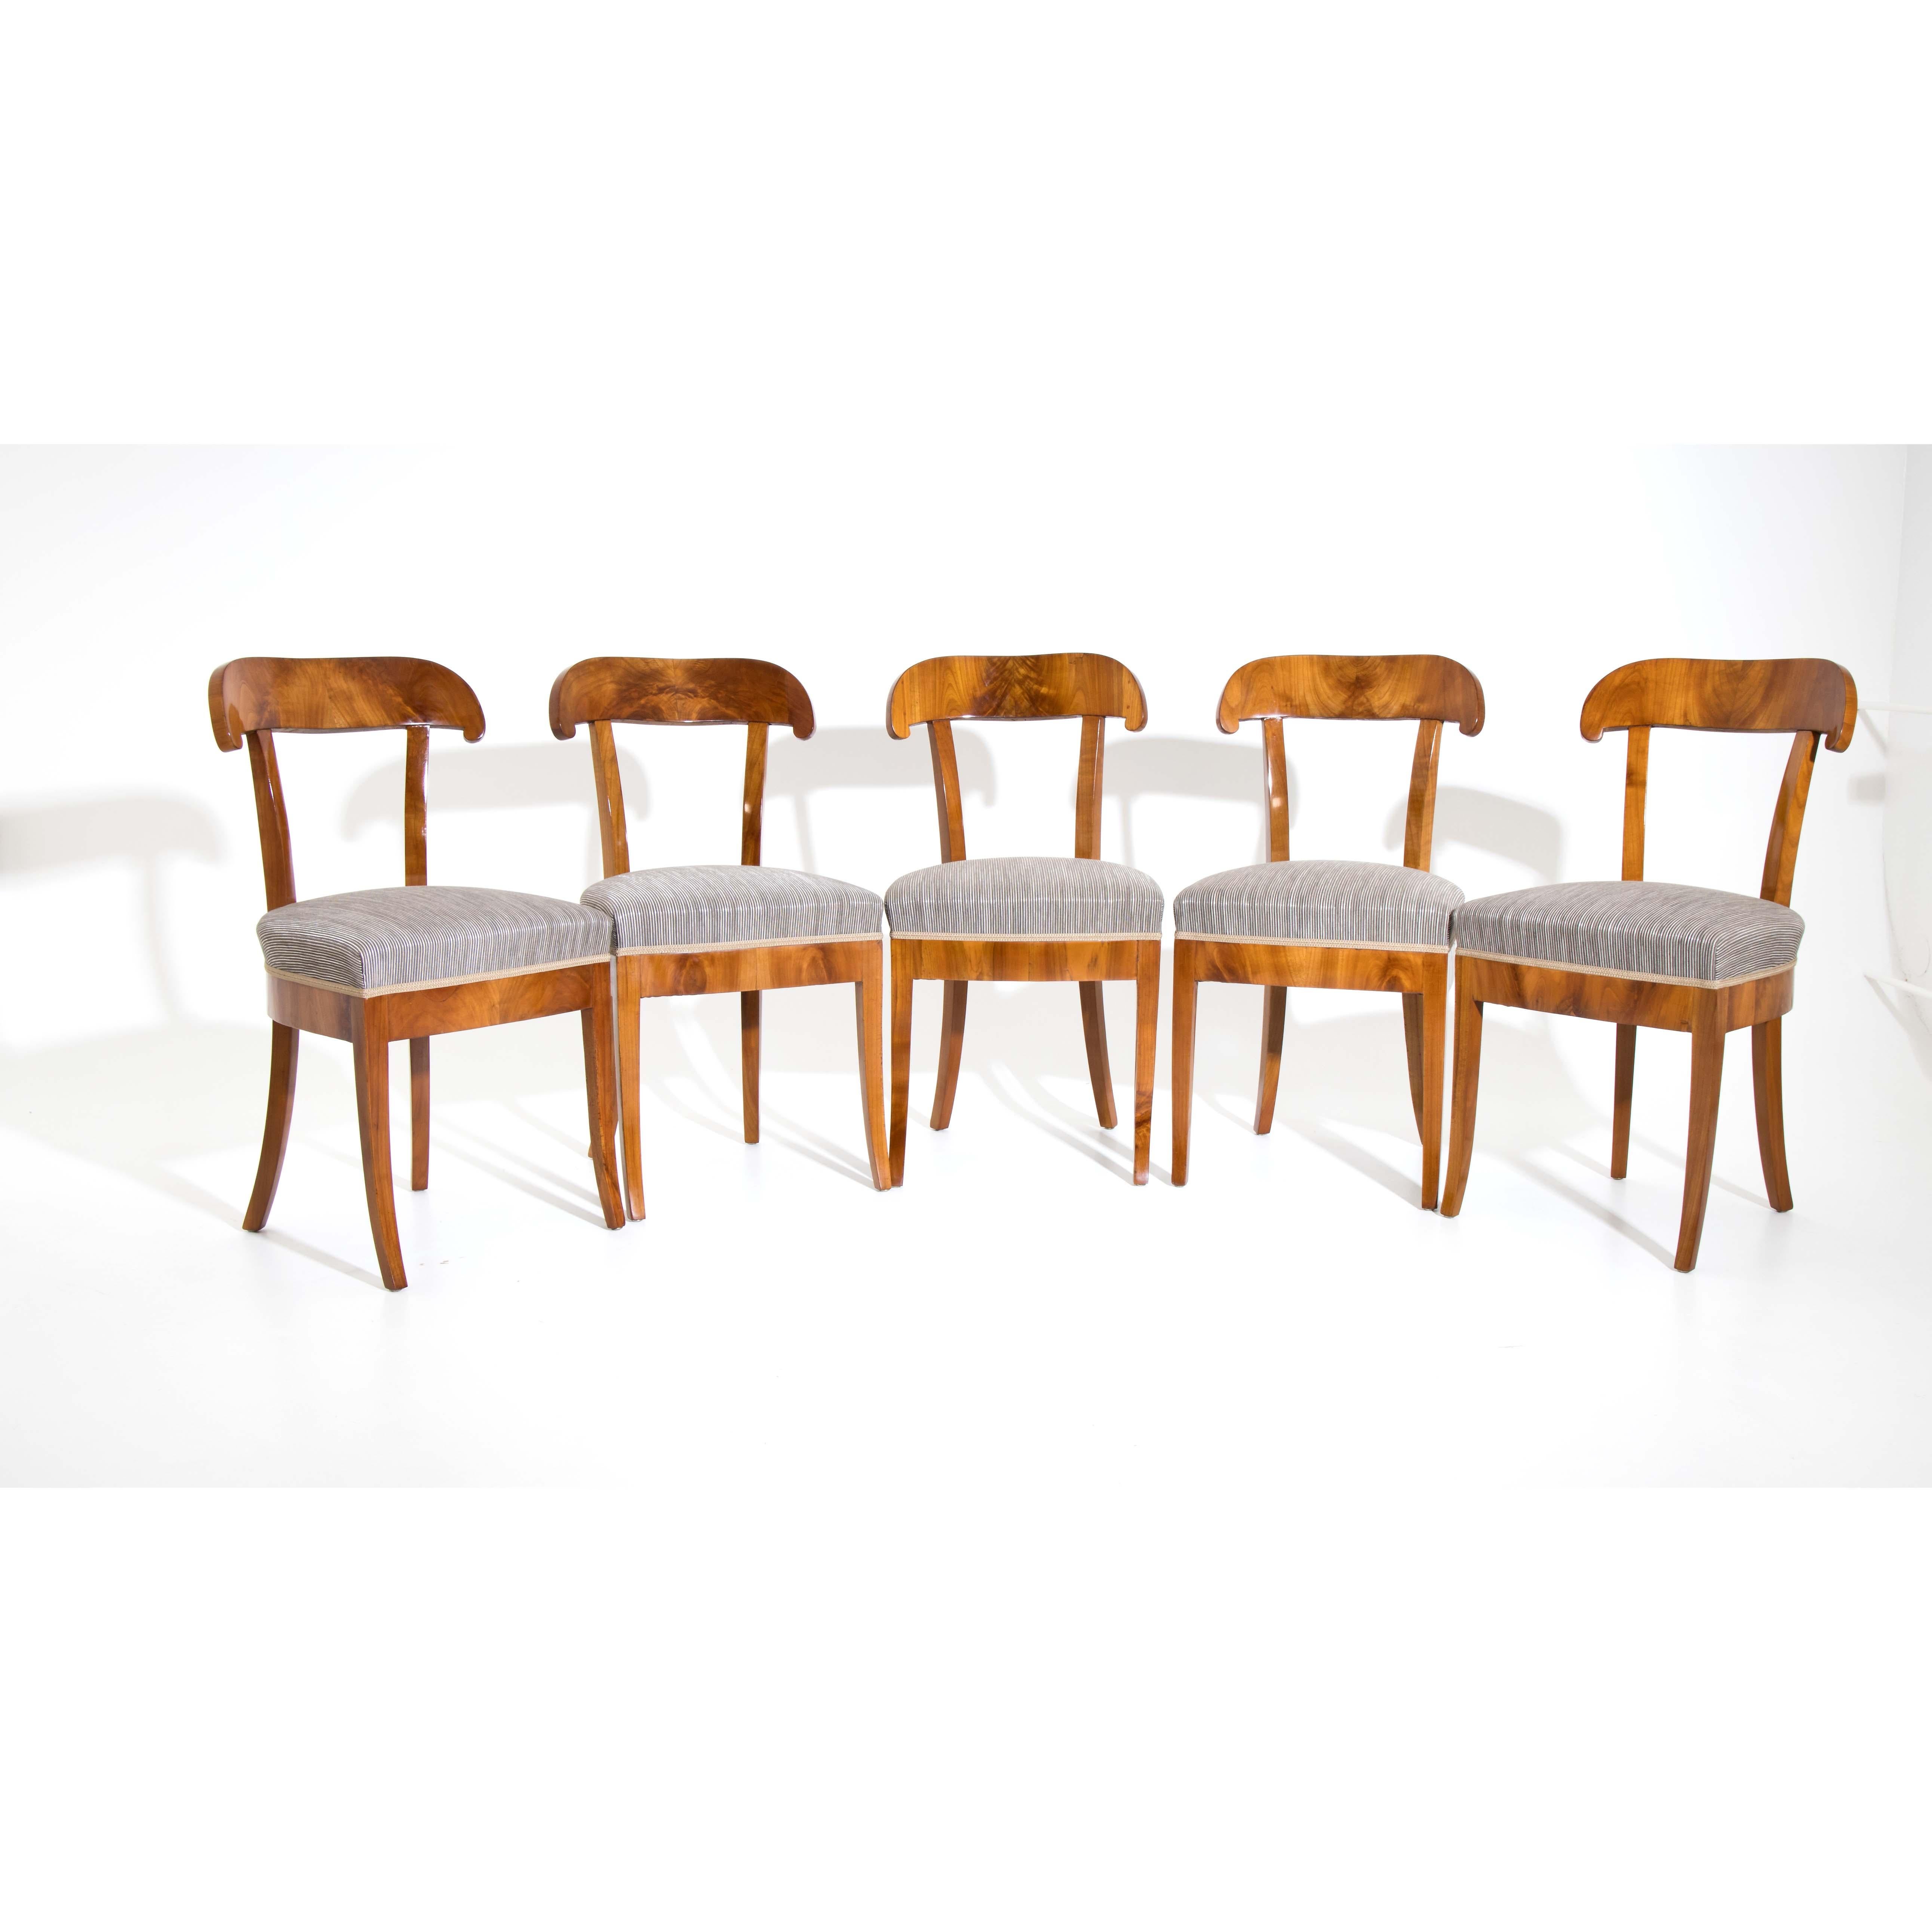 Ensemble de cinq chaises-pelles Biedermeier aux pieds légèrement évasés et aux traverses droites. Les chaises sont plaquées en cerisier. Elles sont nouvellement recouvertes d'un tissu rayé gris et polies à la main.